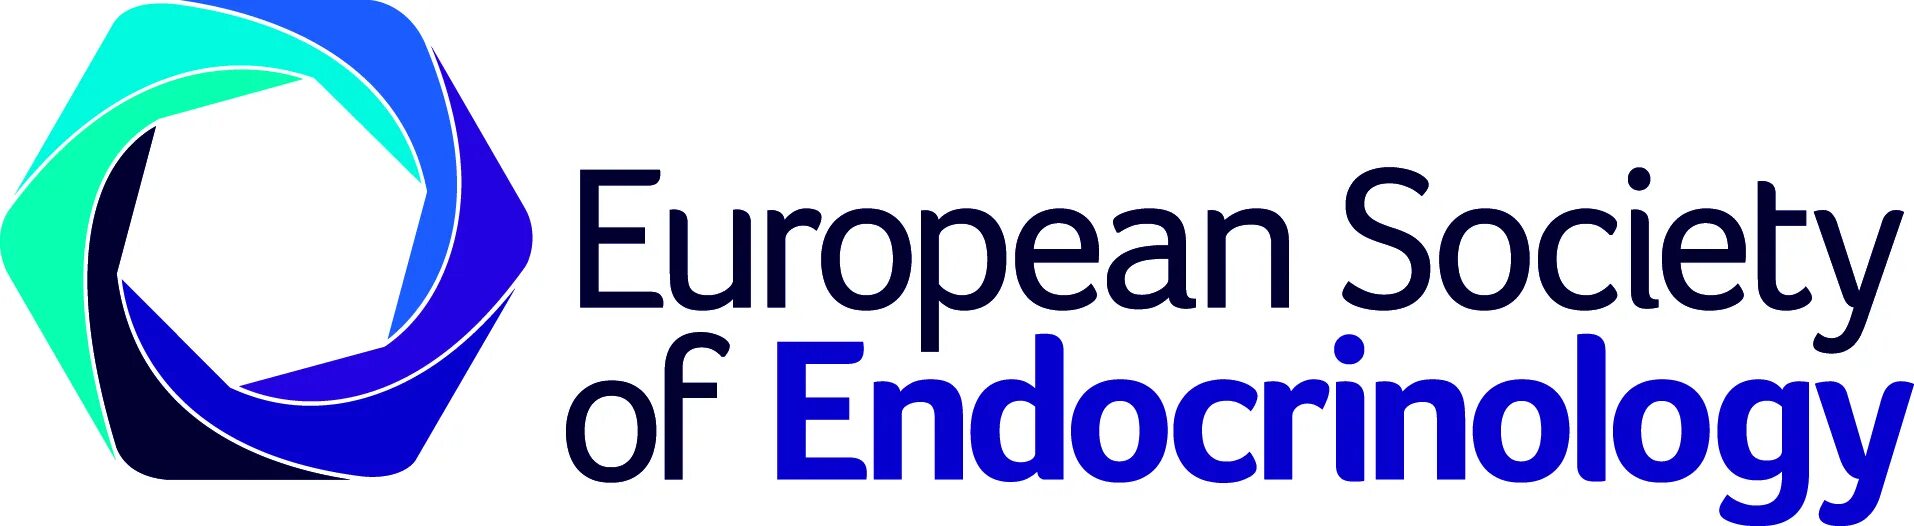 European society. Европейская Ассоциация эндокринологов. Международная Ассоциация эндокринологов. Логотип ЭСЭ.